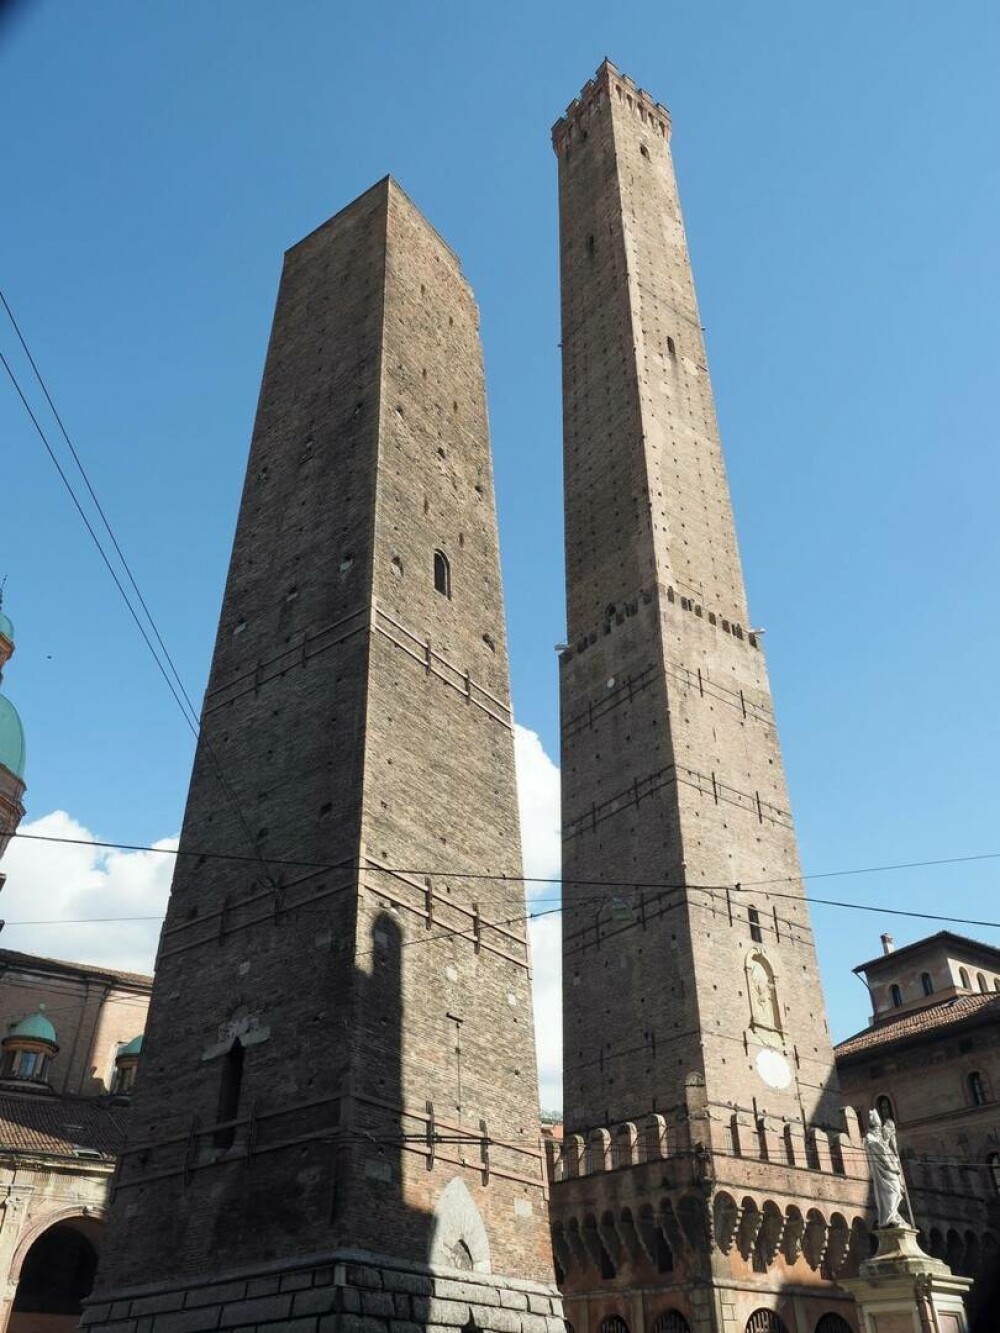 Turnul înclinat din Italia care s-ar putea prăbuși. Oficialii încearcă să-l mențină ridicat | GALERIE FOTO - Imaginea 8